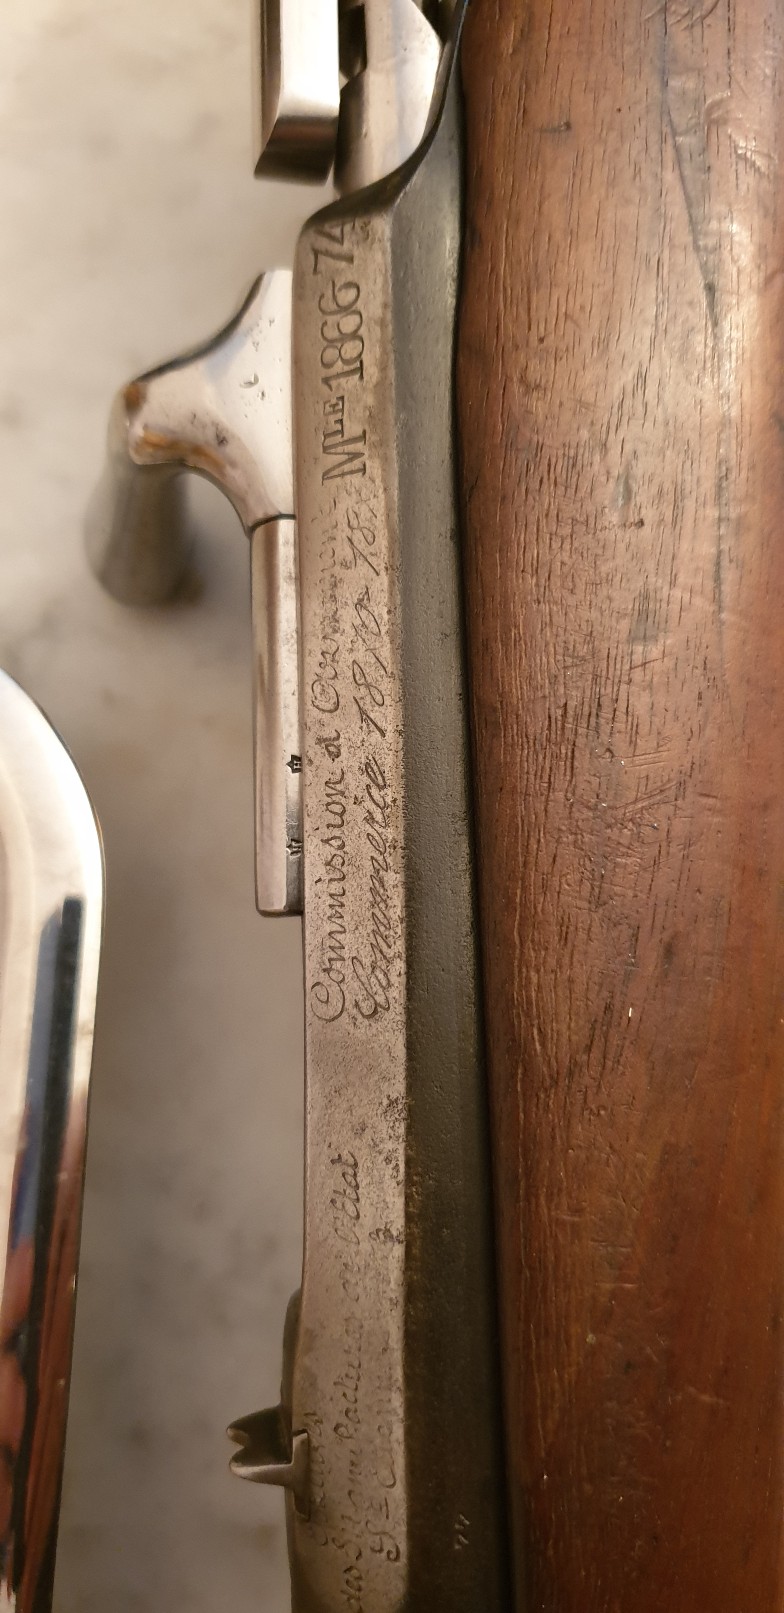 Besoin d'aide pour identifier une carabine Gras modèle 1866-1874  20191132